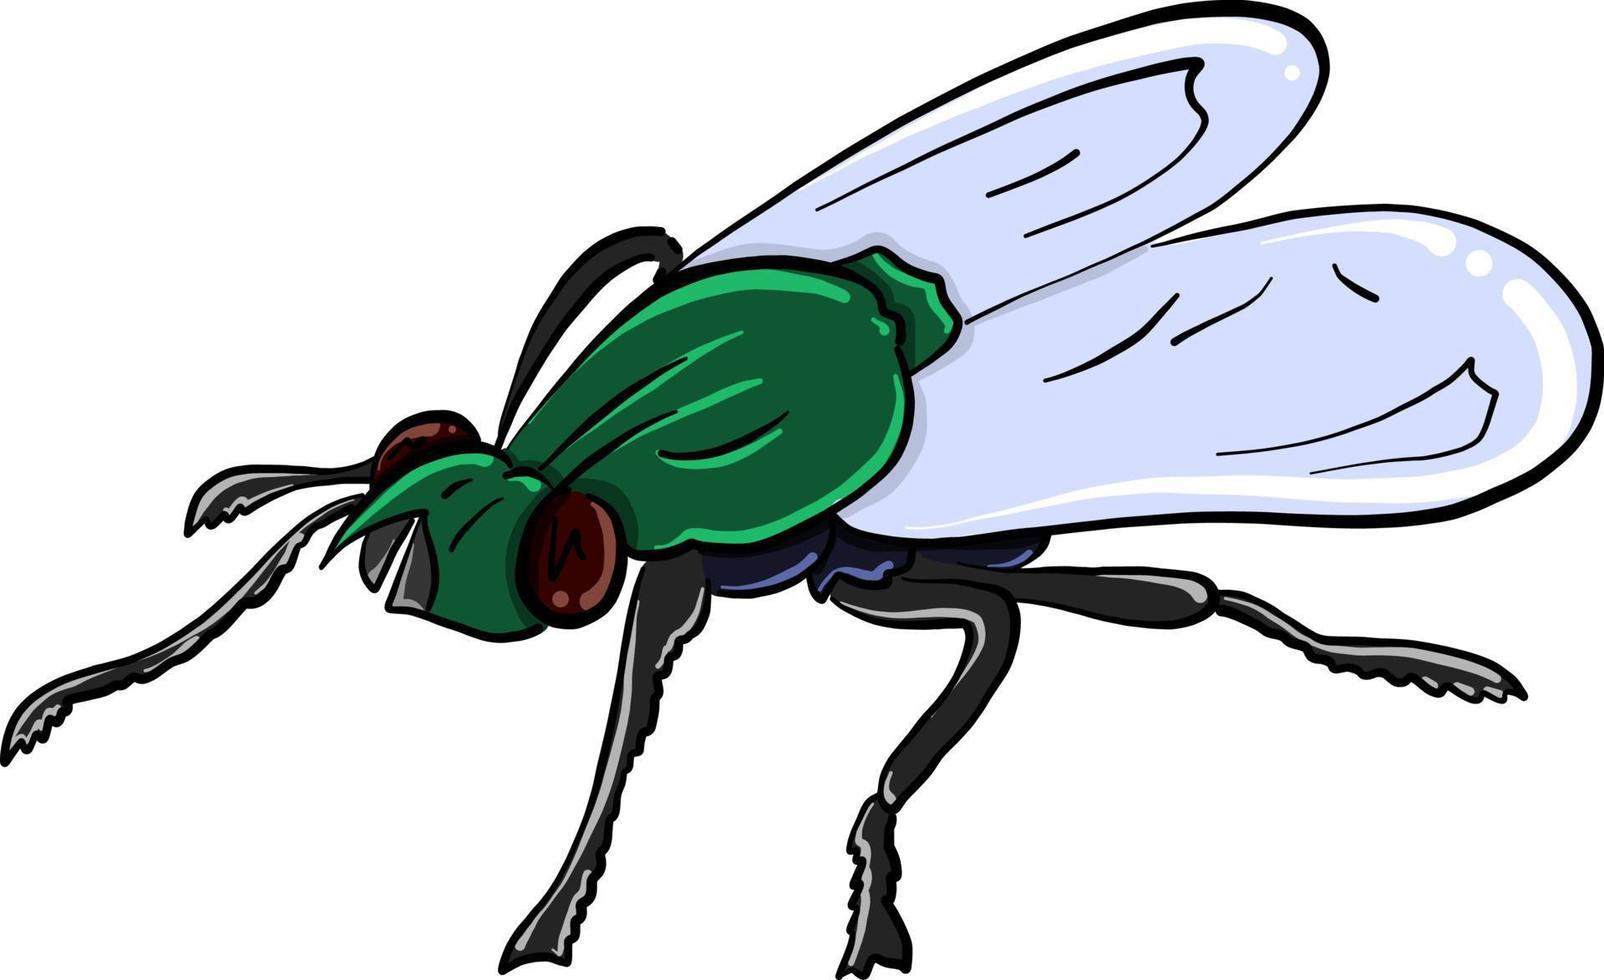 mosca verde, ilustración, vector sobre fondo blanco